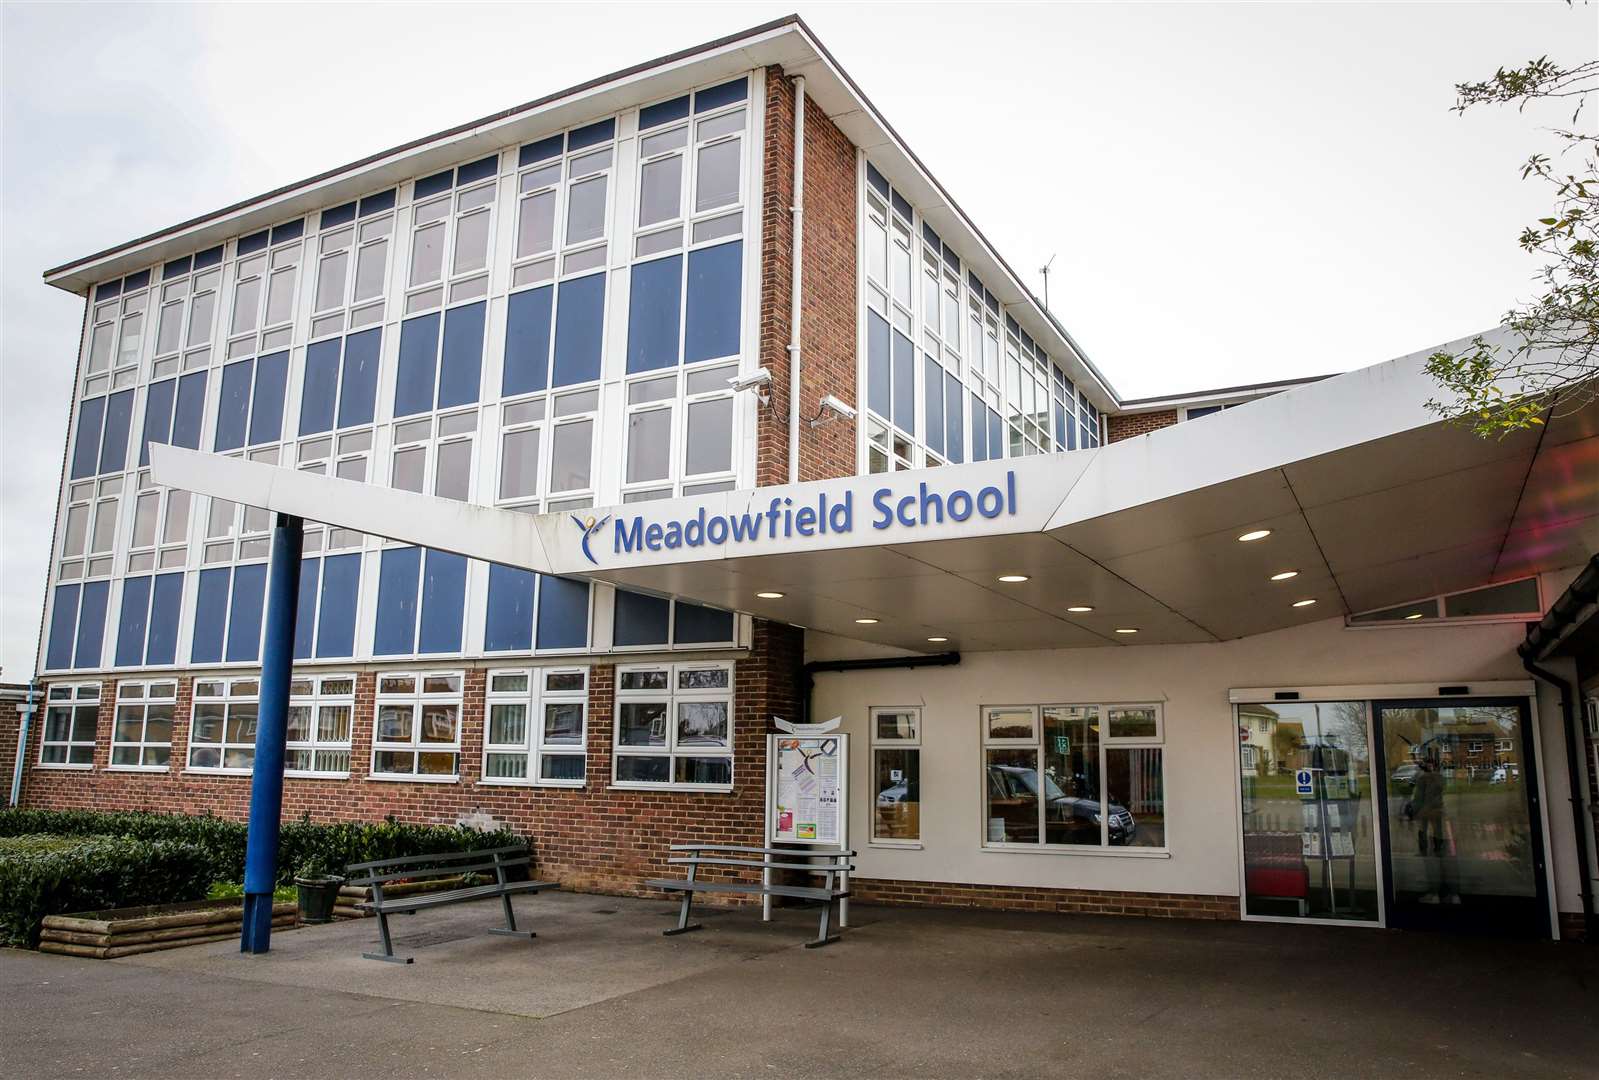 Meadowfield School in Swanstree Avenue, Sittingbourne. Picture: Matthew Walker